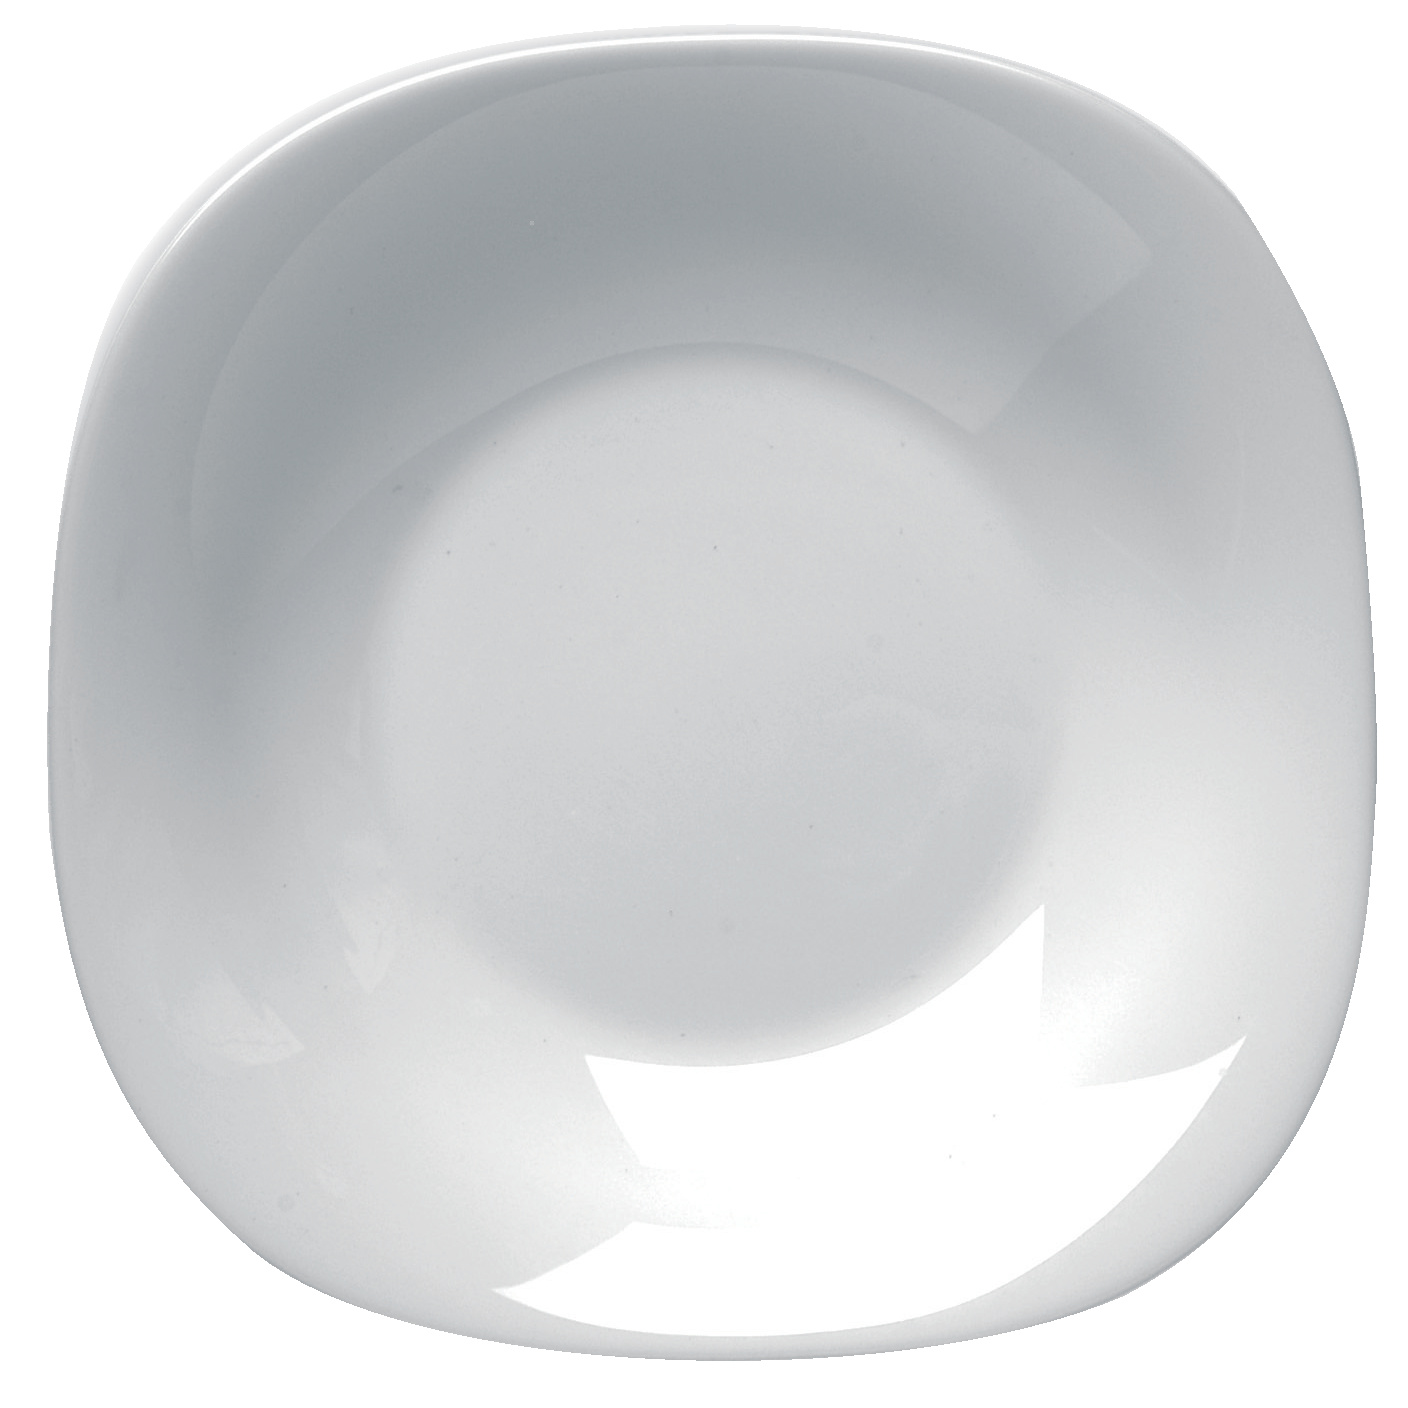 Πιάτο Βαθύ Γυάλινο Parma Λευκό Bormioli Rocco 23×23εκ. BR01416500 (Σετ 6 Τεμάχια) (Υλικό: Γυαλί, Χρώμα: Λευκό, Μέγεθος: Μεμονωμένο) – Bormioli Rocco – BR01416500